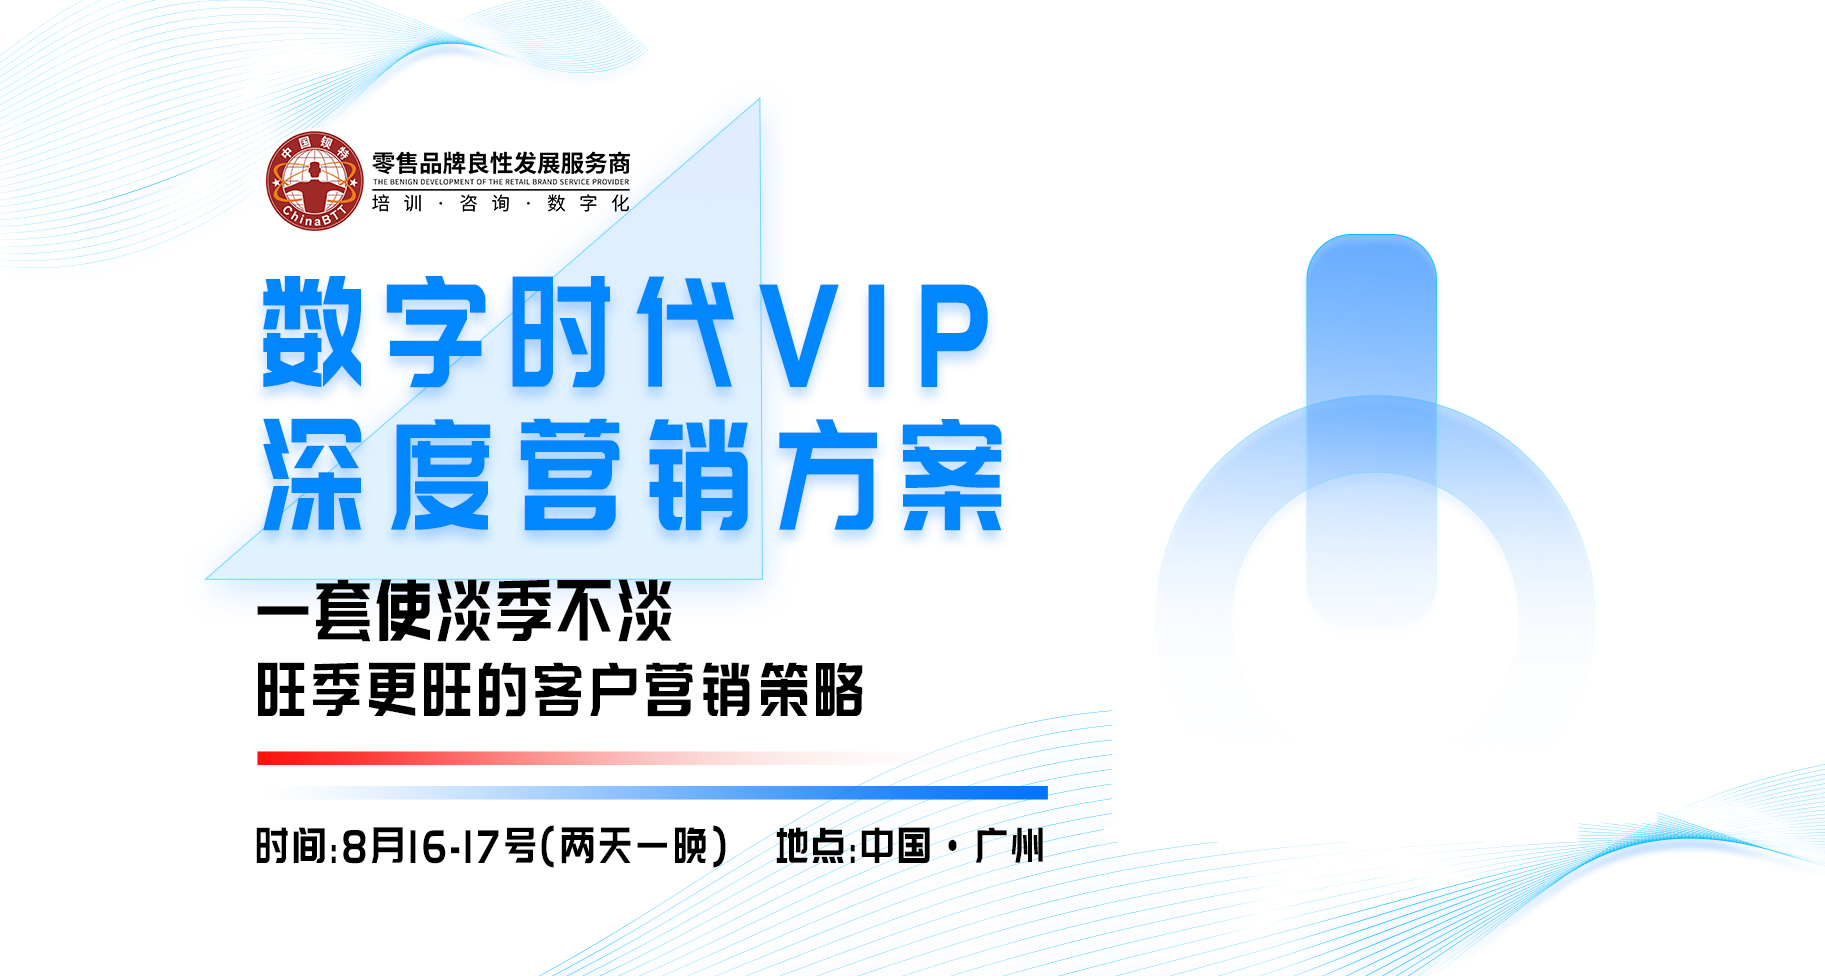 8月16-17日_数字化时代VIP深度营销方案_广州